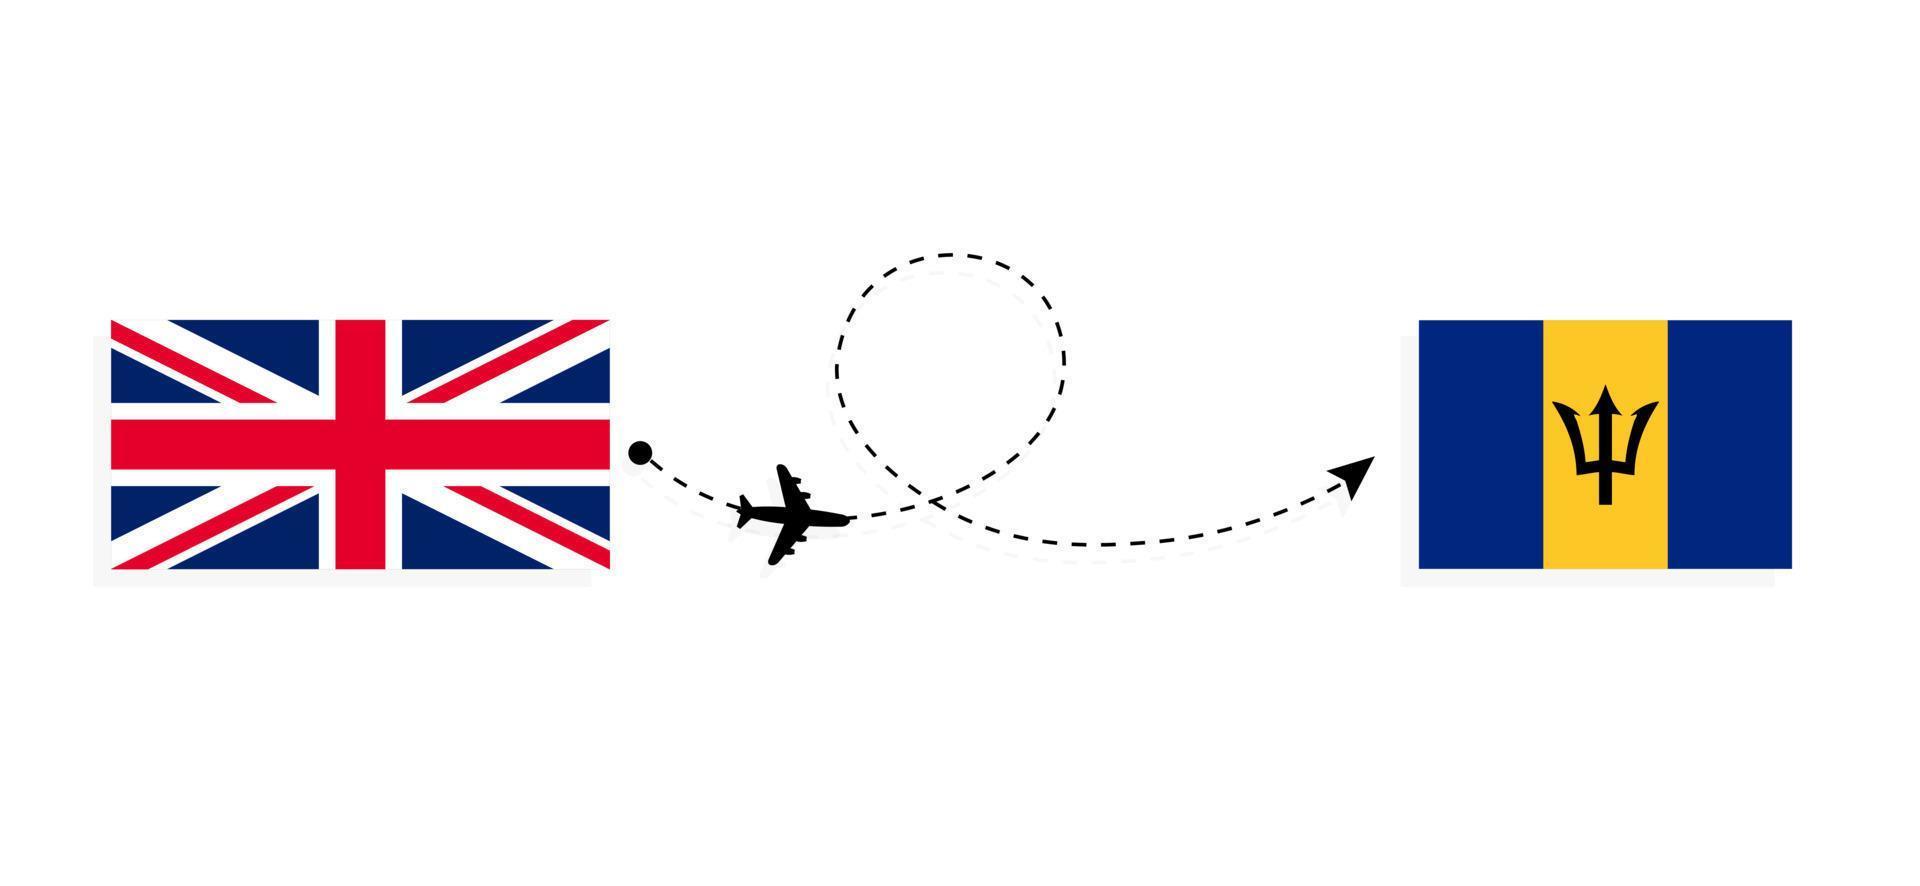 flyg och resor från Storbritannien till Barbados med passagerarflygplan vektor